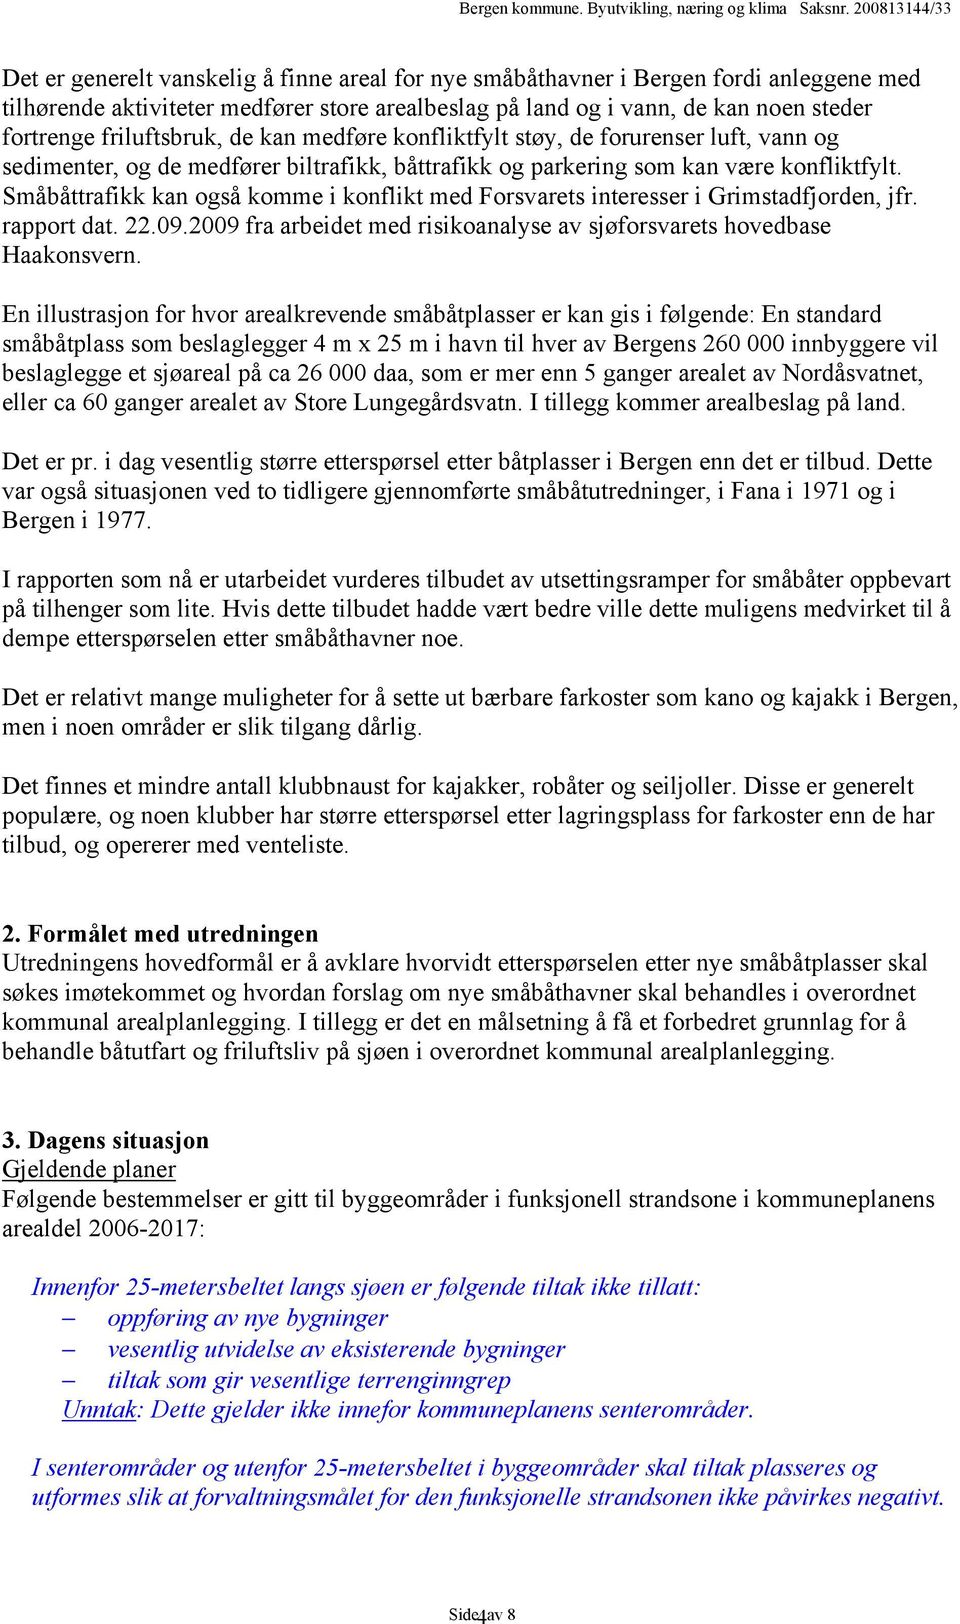 Småbåttrafikk kan også komme i konflikt med Forsvarets interesser i Grimstadfjorden, jfr. rapport dat. 22.09.2009 fra arbeidet med risikoanalyse av sjøforsvarets hovedbase Haakonsvern.